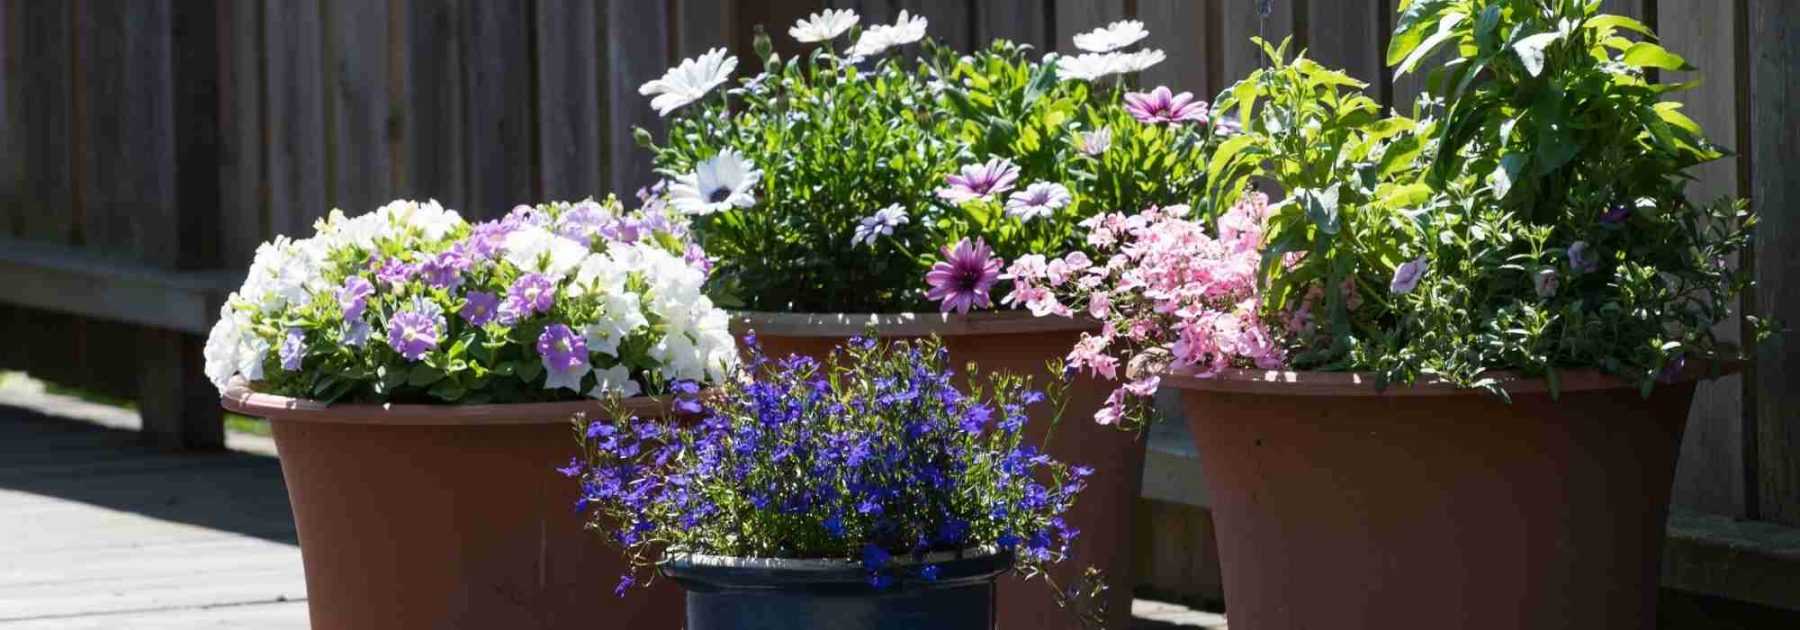 Comment obtenir du compost - La Roseraie du Désert - Rosiers, Pépinière  Plantes et Fleurs